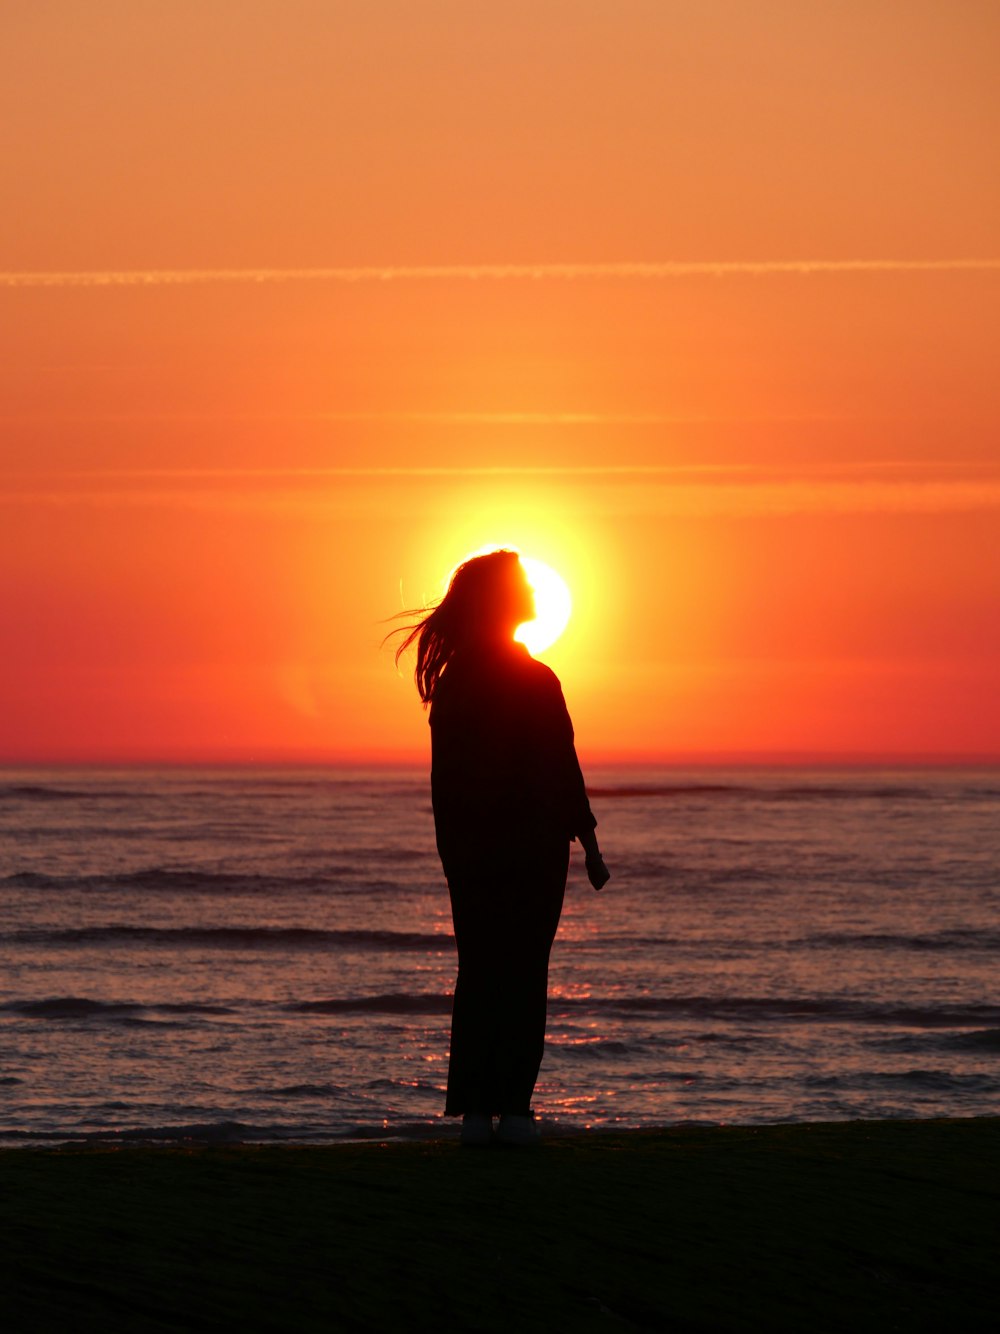 Un uomo in piedi su una spiaggia con il sole che tramonta dietro di lui